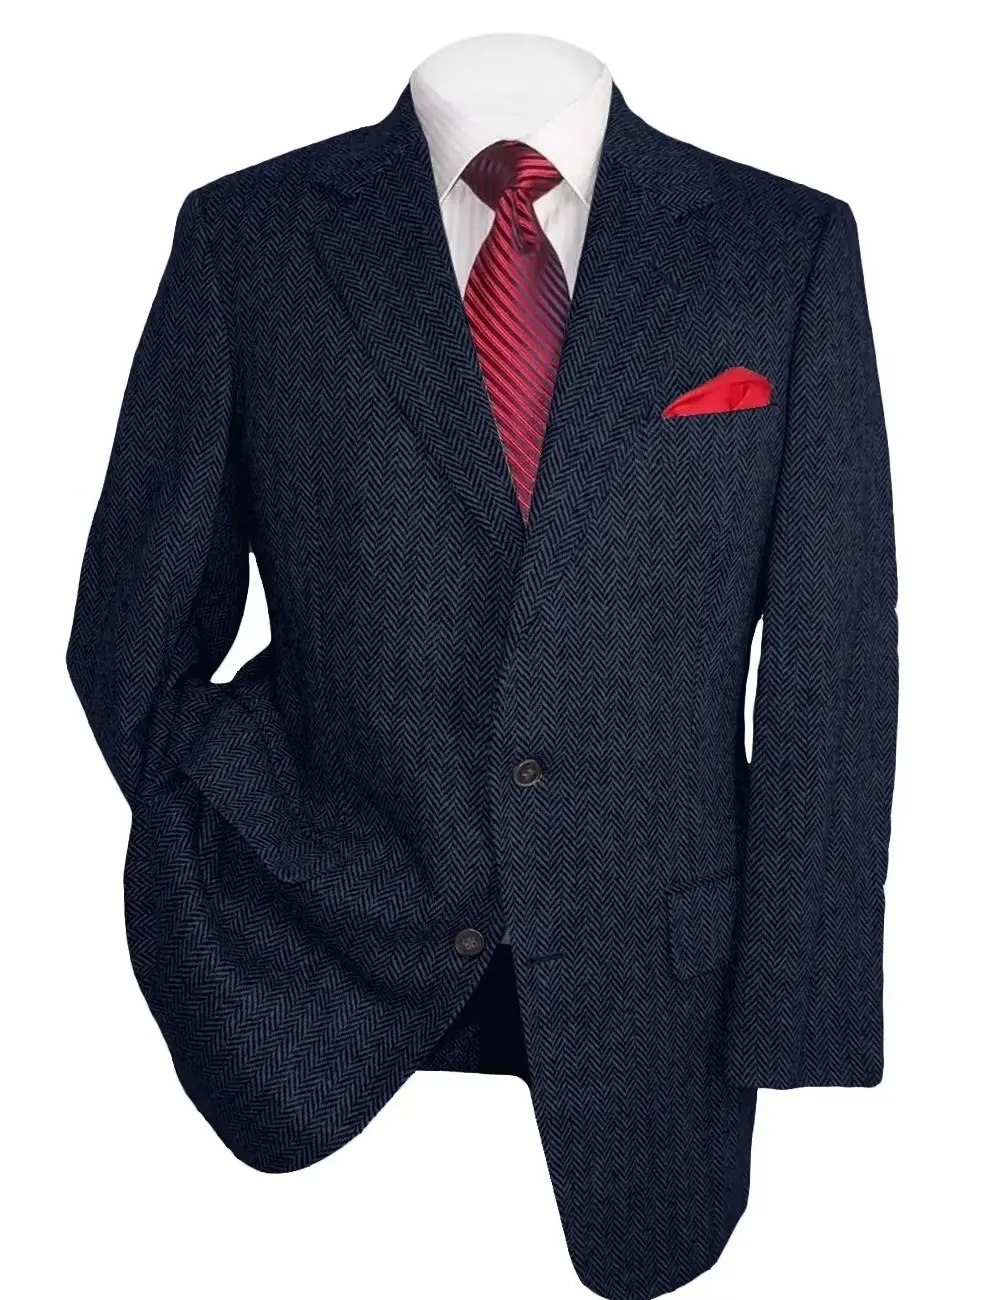 

Мужской твидовый пиджак в елочку, черный, коричневый или серый винтажный приталенный пиджак на 2 пуговицах, повседневный смокинговый пиджак в стиле ретро для свадьбы, 1 шт.